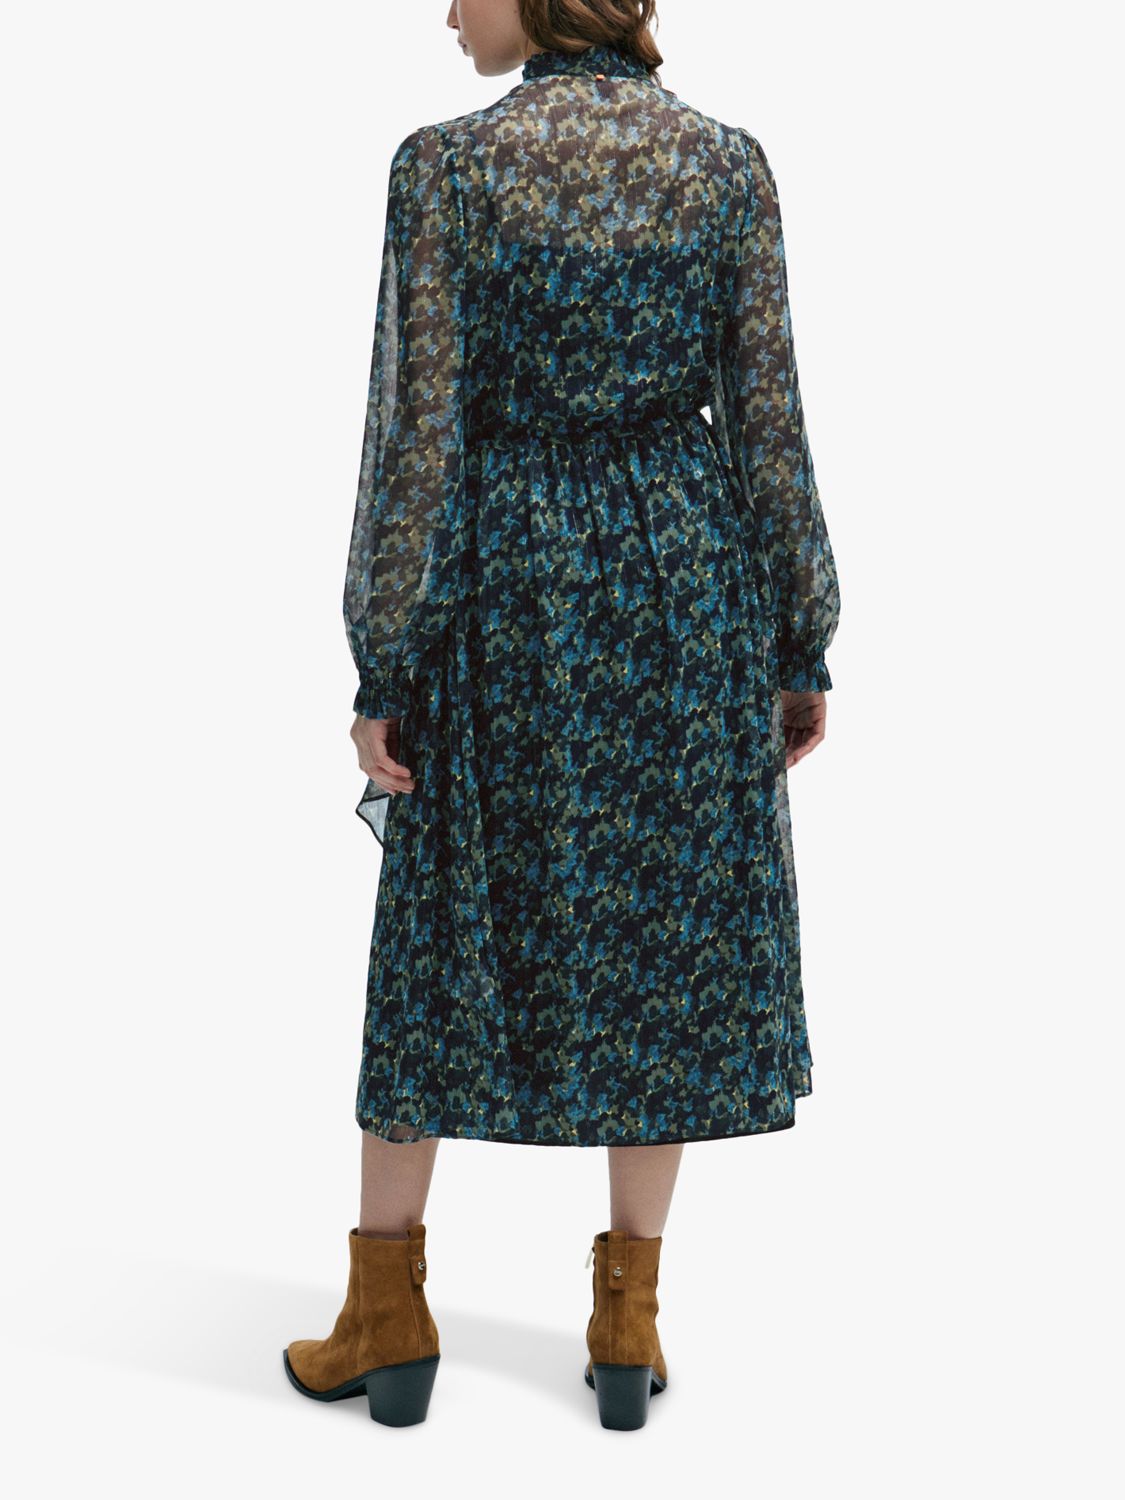 BOSS Dusica Ruffle Collar Midi Dress, Blue/Multi at John Lewis & Partners